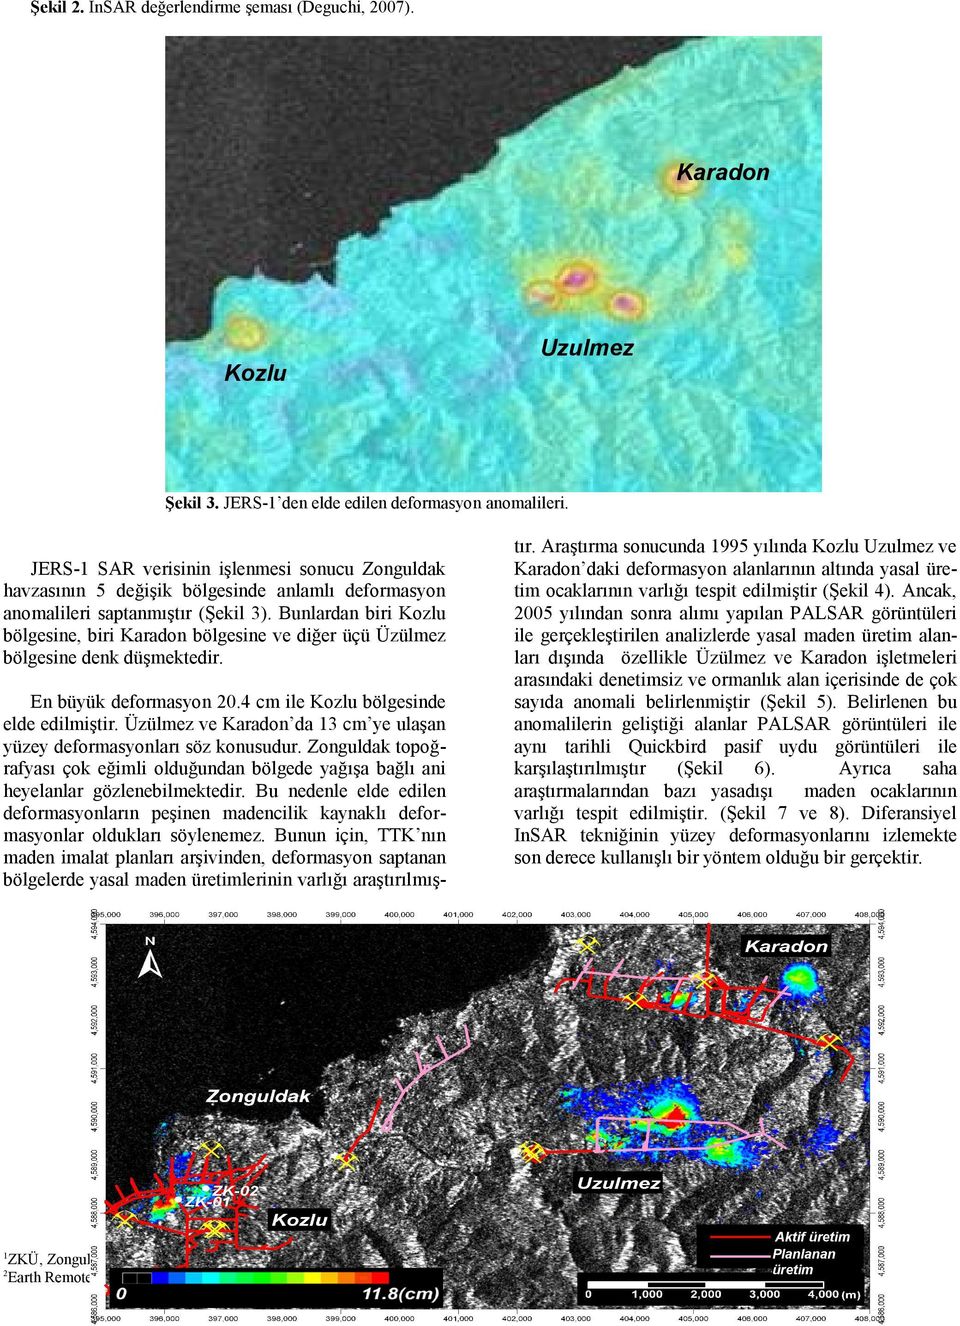 Bunlardan biri Kozlu bölgesine, biri Karadon bölgesine ve diğer üçü Üzülmez bölgesine denk düşmektedir. En büyük deformasyon 0.4 cm ile Kozlu bölgesinde elde edilmiştir.